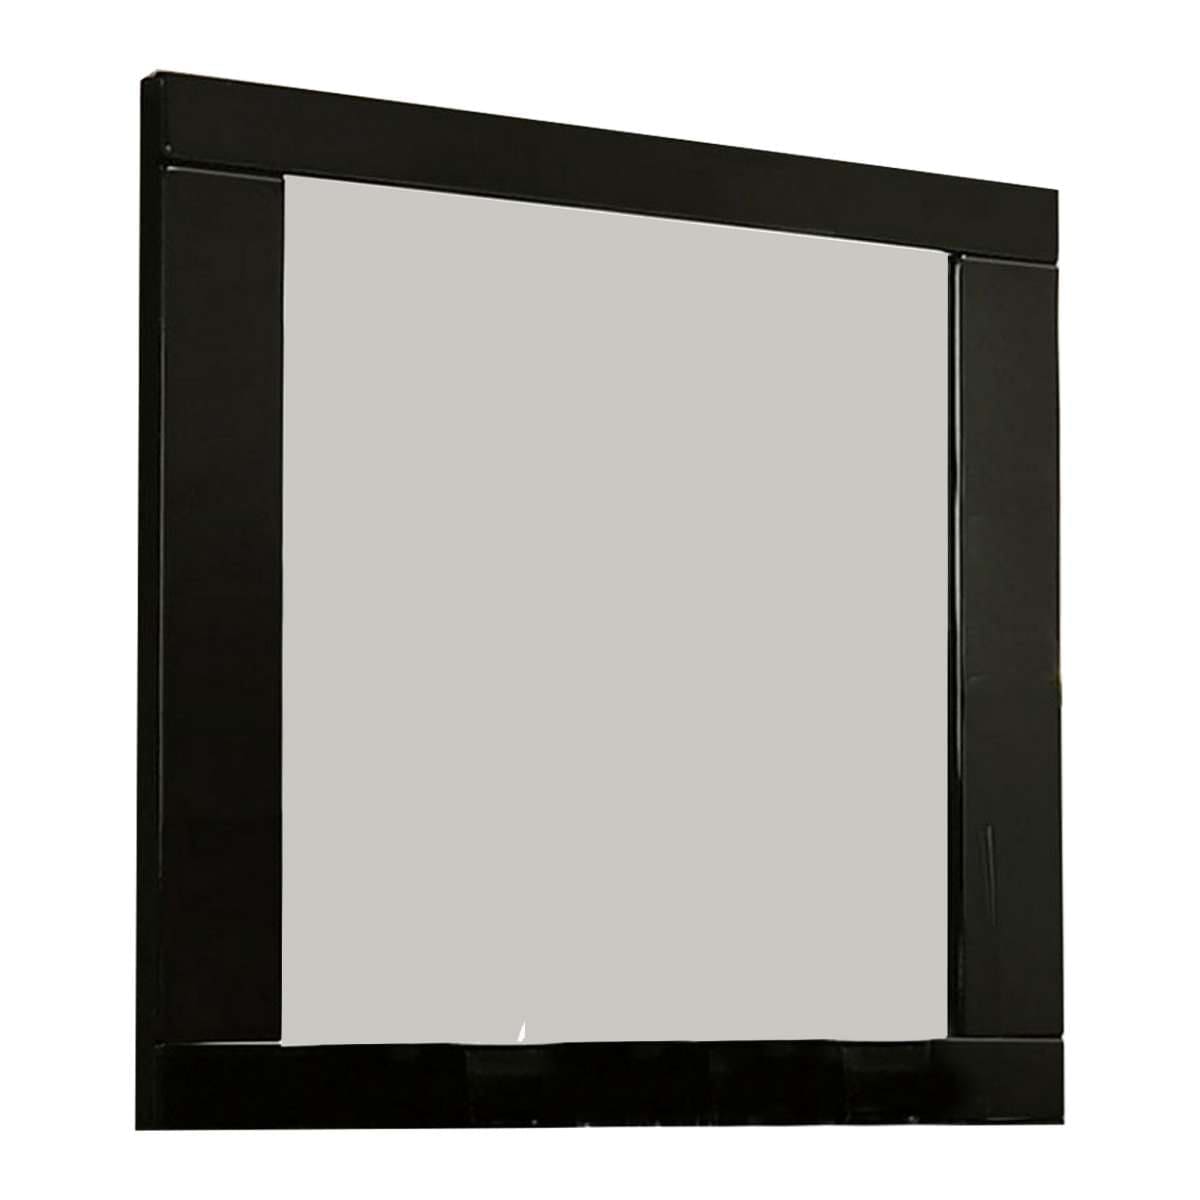 Benzara 37 Inch Rectangular Mirror With Wooden Frame, Black By Benzara Mirrors BM233769